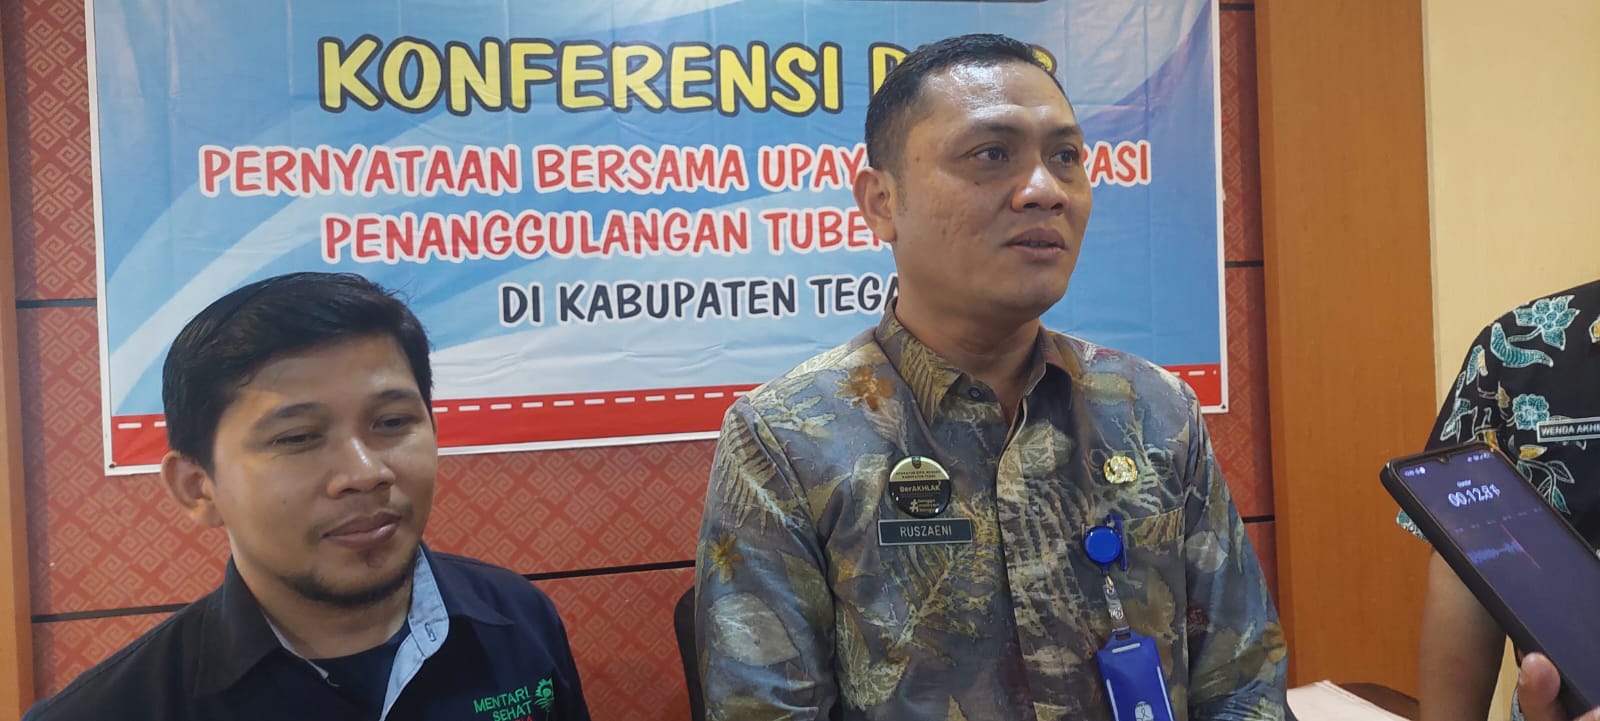 Kasus TBC Terbanyak di Wilayah Adiwerna Kabupaten Tegal 